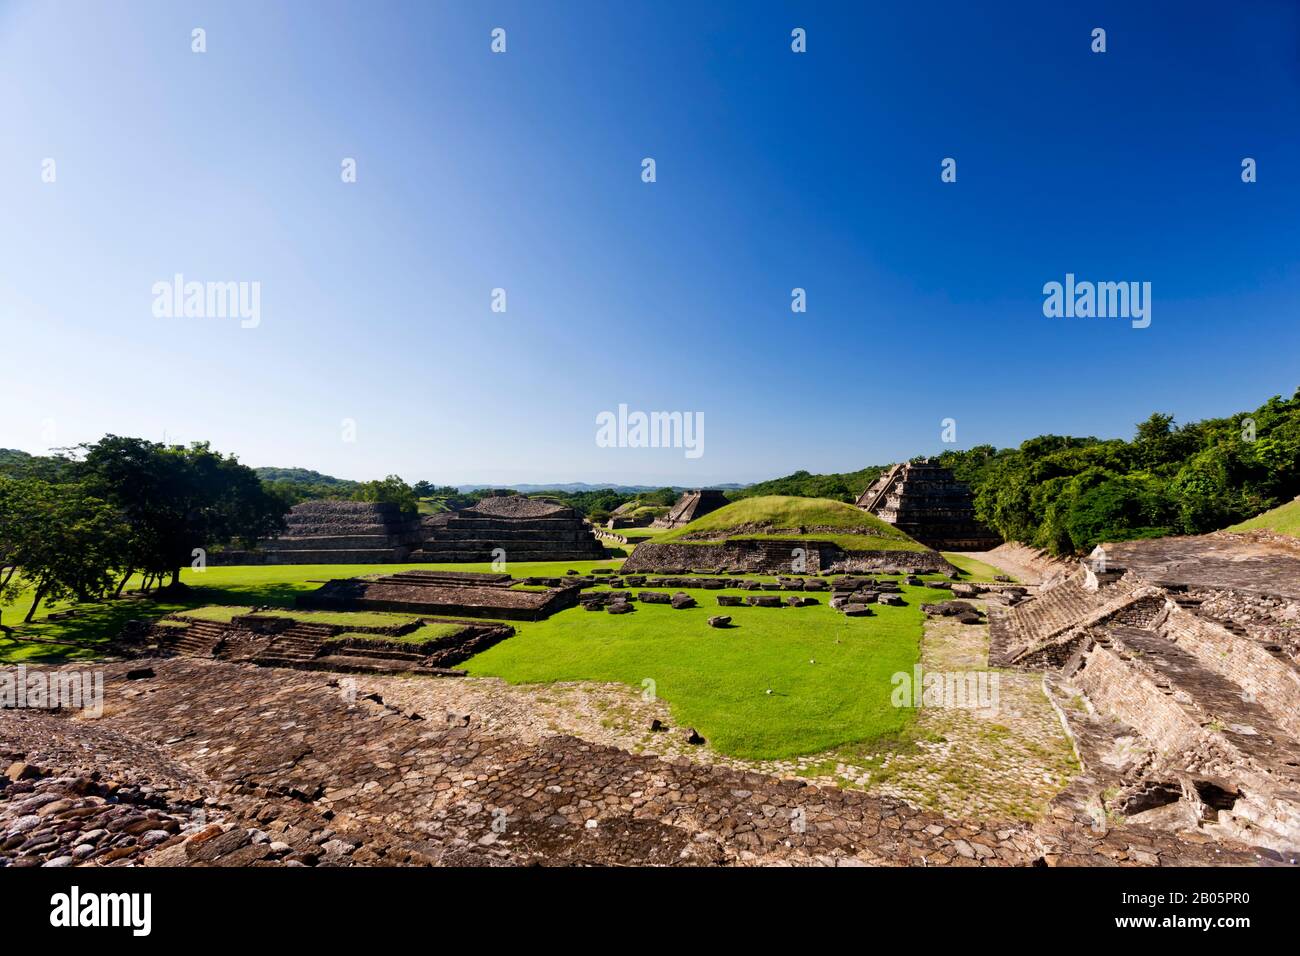 Complesso piramidi di El Tajin, nella giungla, il più importante sito archeologico della Mesoamerica nord-orientale, rovine Maya, Veracruz, Messico, America Centrale Foto Stock